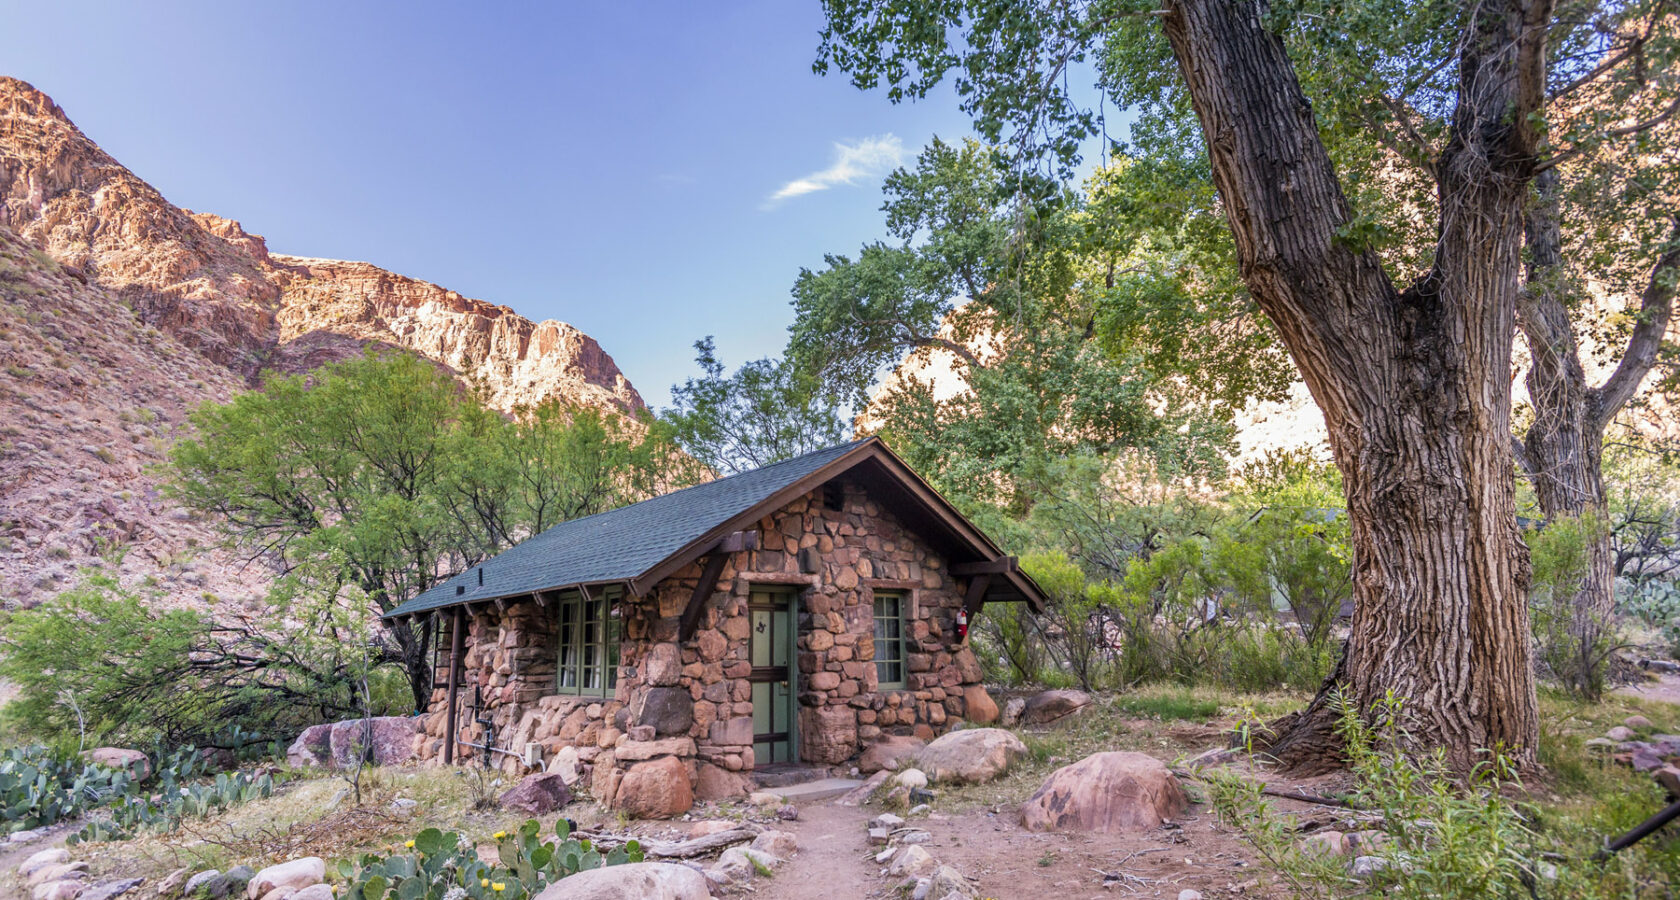 Rustic lodging accomodations at Phantom Ranch at the bottom of Grand Canyon